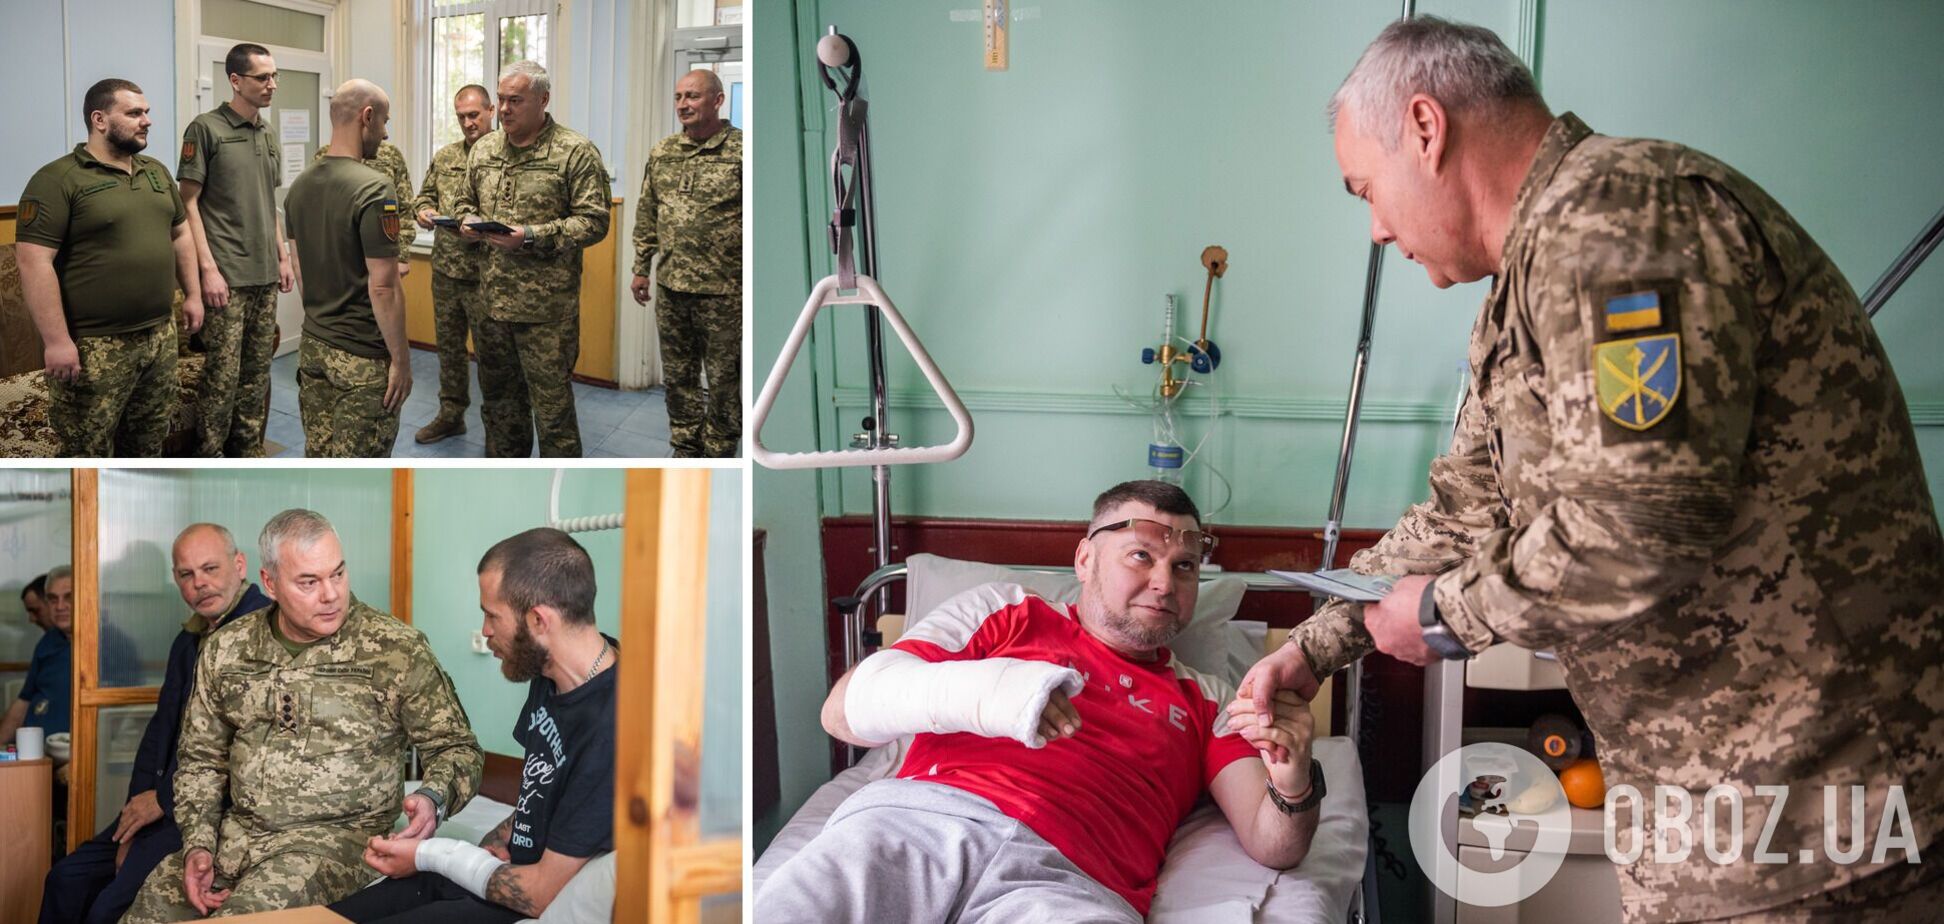 'Уважение и поддержка наших воинов является одной из основных задач': командующий Объединенными силами ВСУ Наев посетил раненых военнослужащих. Фото и видео